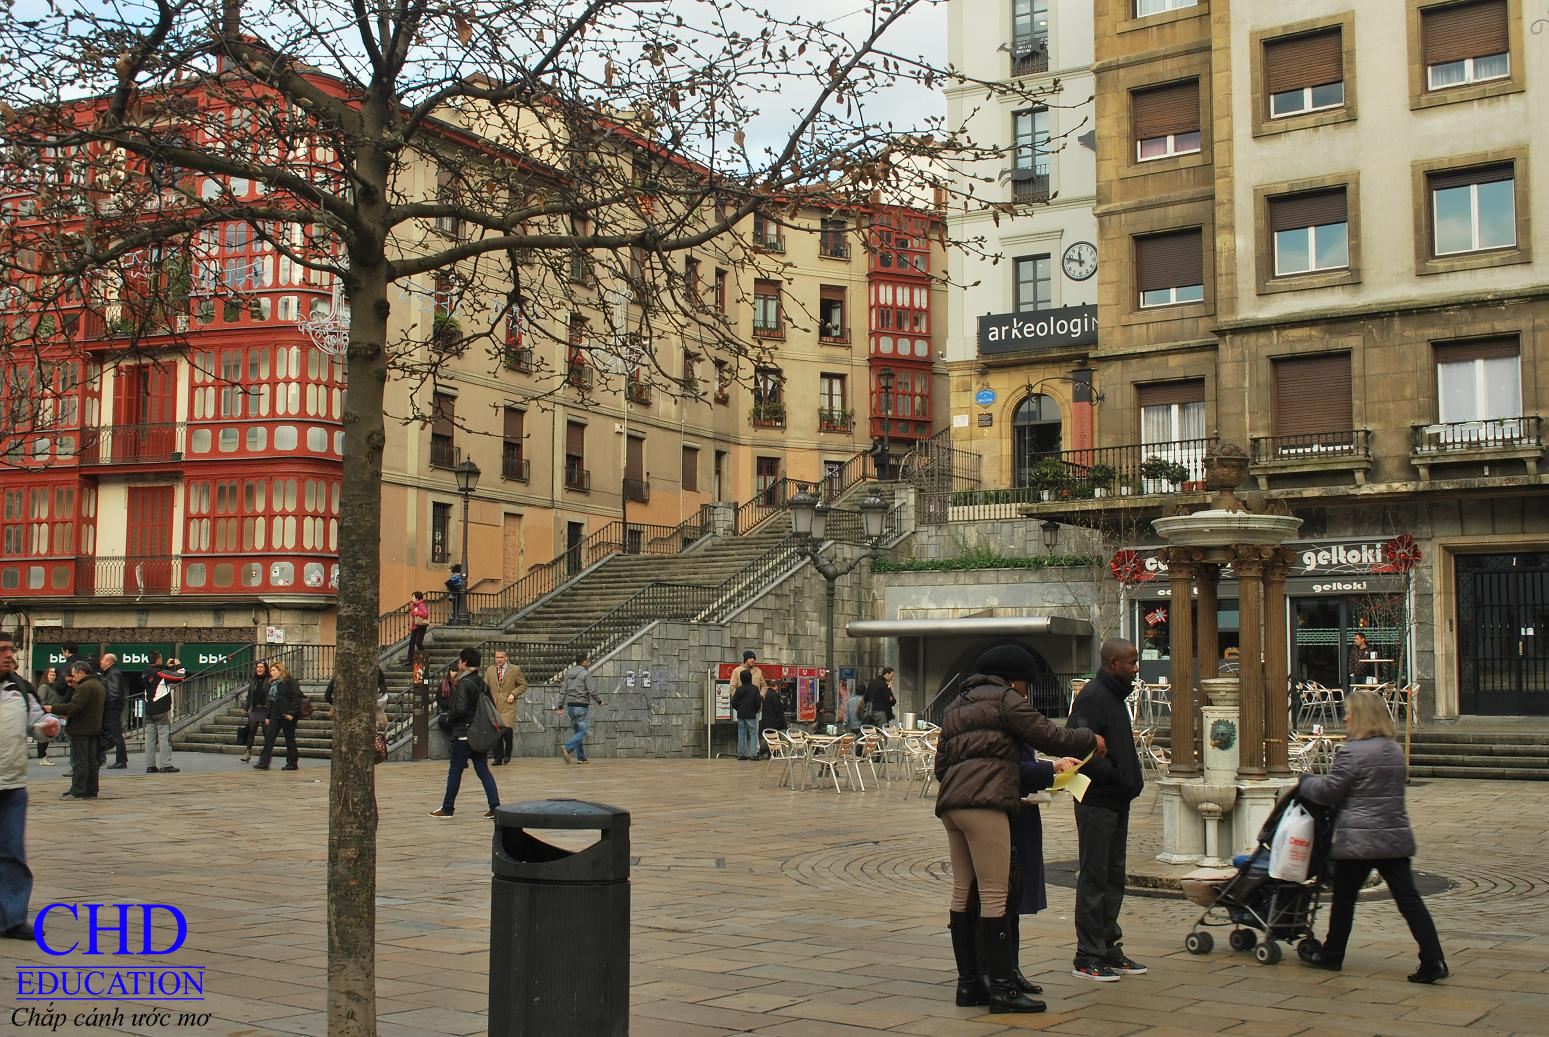 Thành phố Bilbao – Địa điểm lý tưởng để du học tại Tây Ban Nha